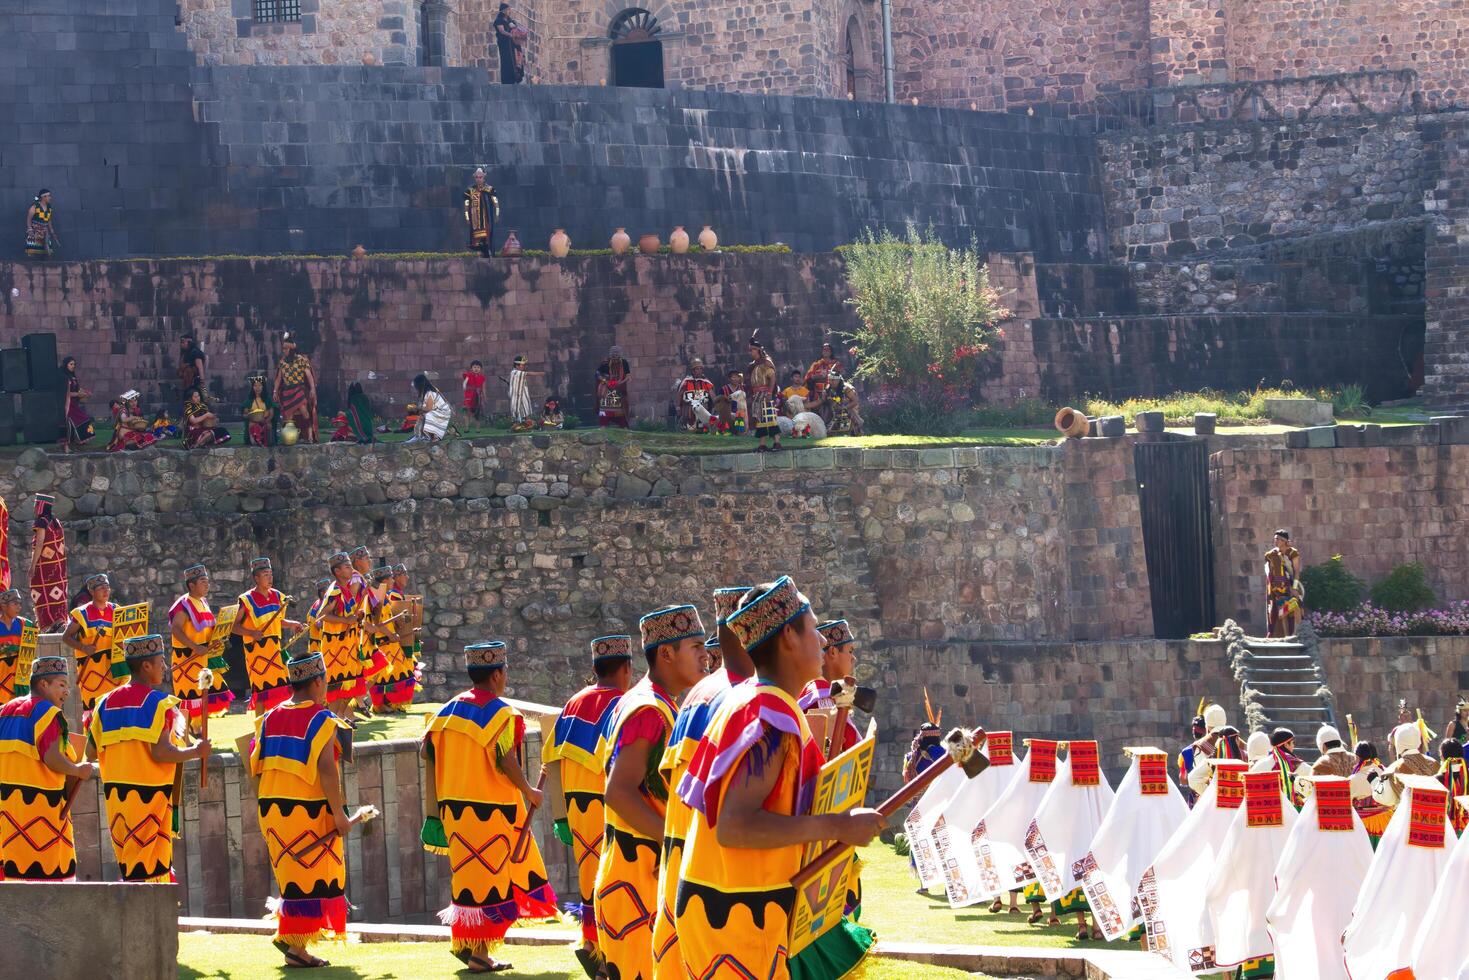 cusco, Perú, 2015 - hombres y mujer en tradicional disfraces Inti Raymi sur America foto